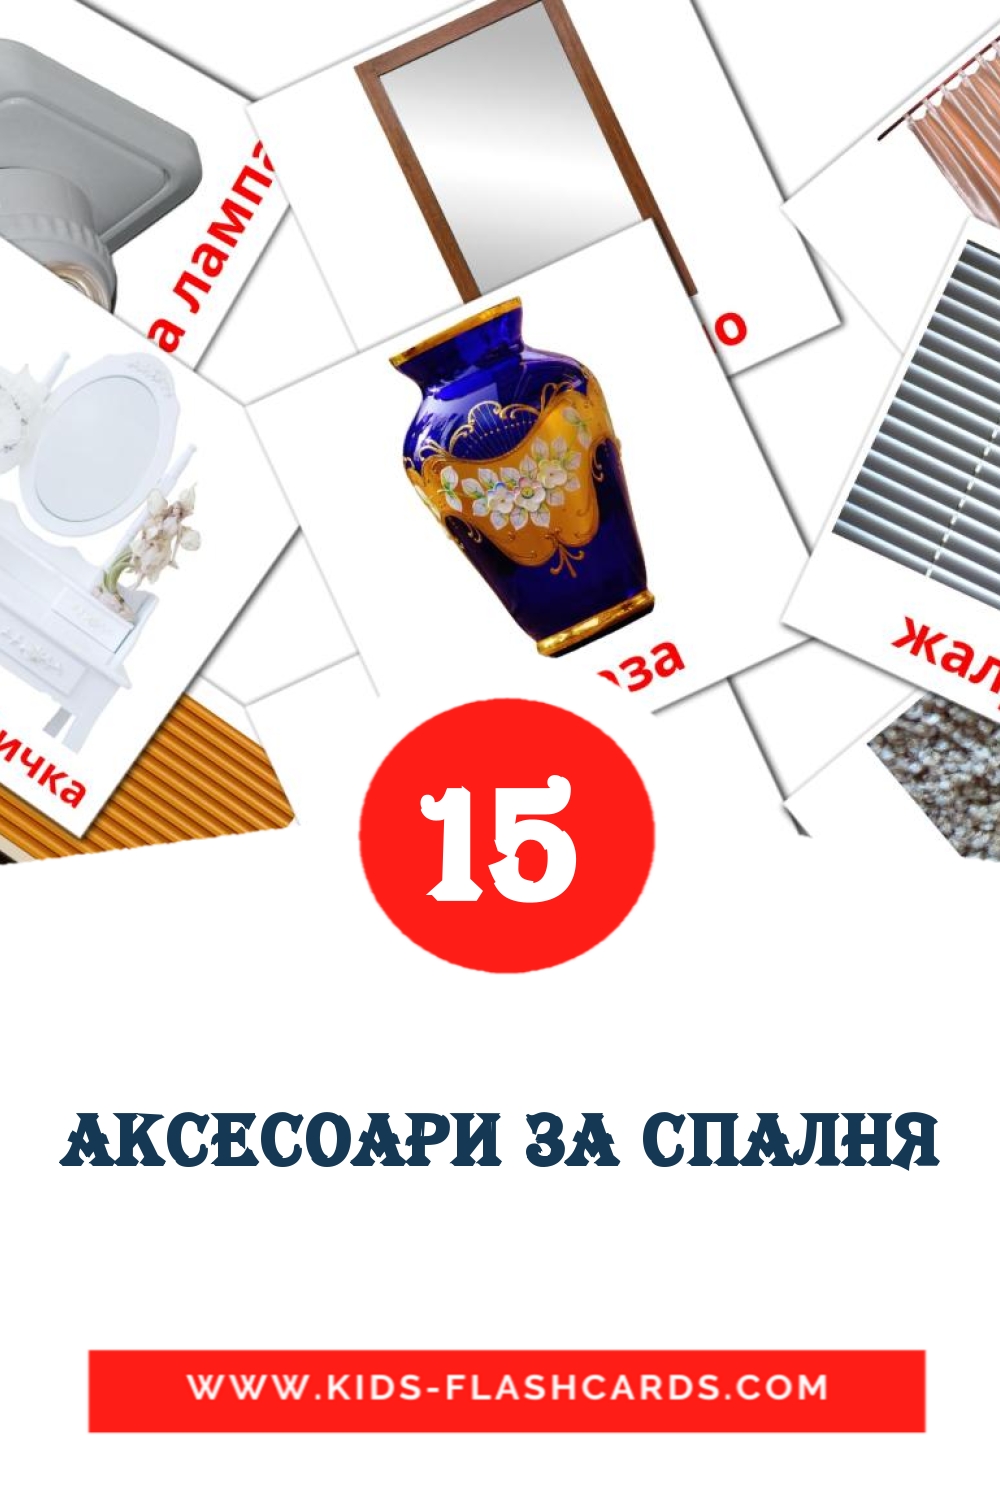 аксесоари за спалня на болгарском для Детского Сада (18 карточек)